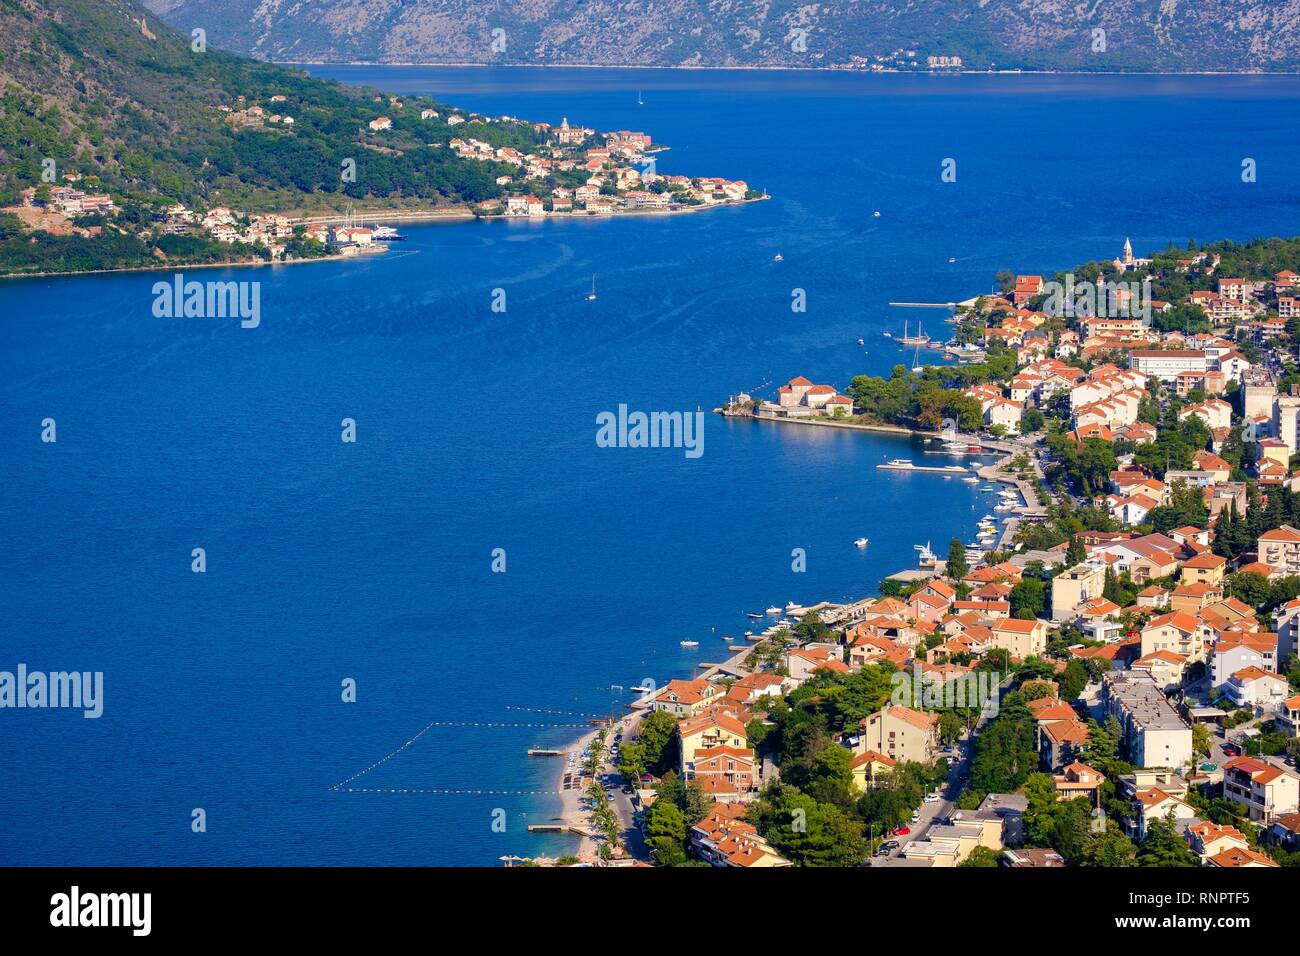 Dobrota y Prcanj, vista desde la fortaleza Sveti Ivan en Kotor, bahía de Kotor, Montenegro Foto de stock